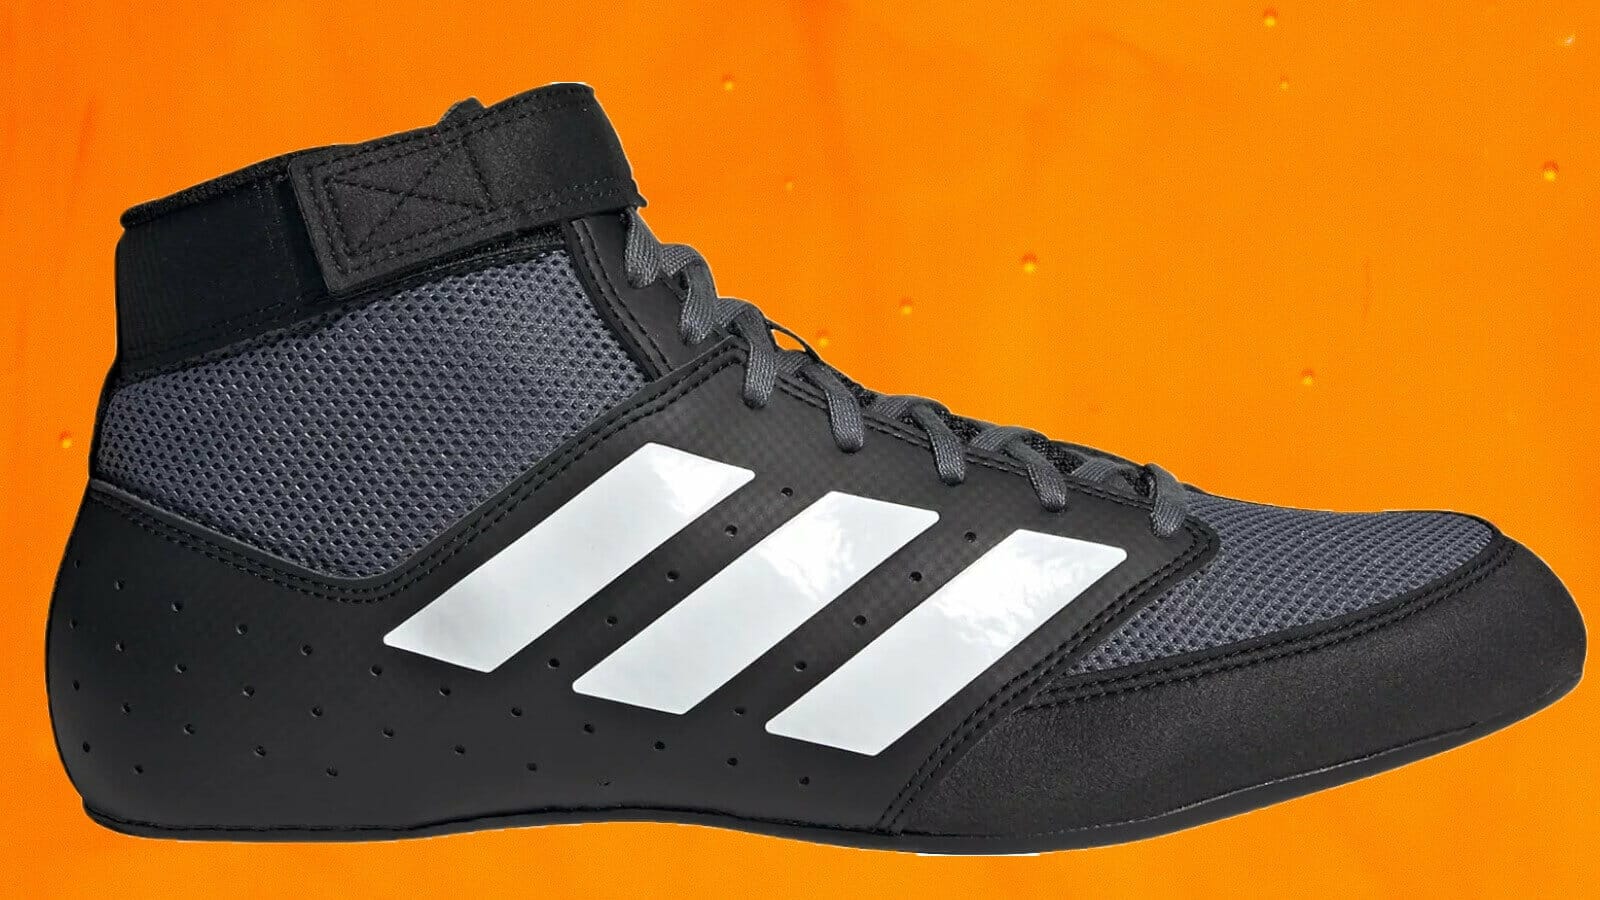 Profile of adidas Mat Hog 2.0 youth size shoe.